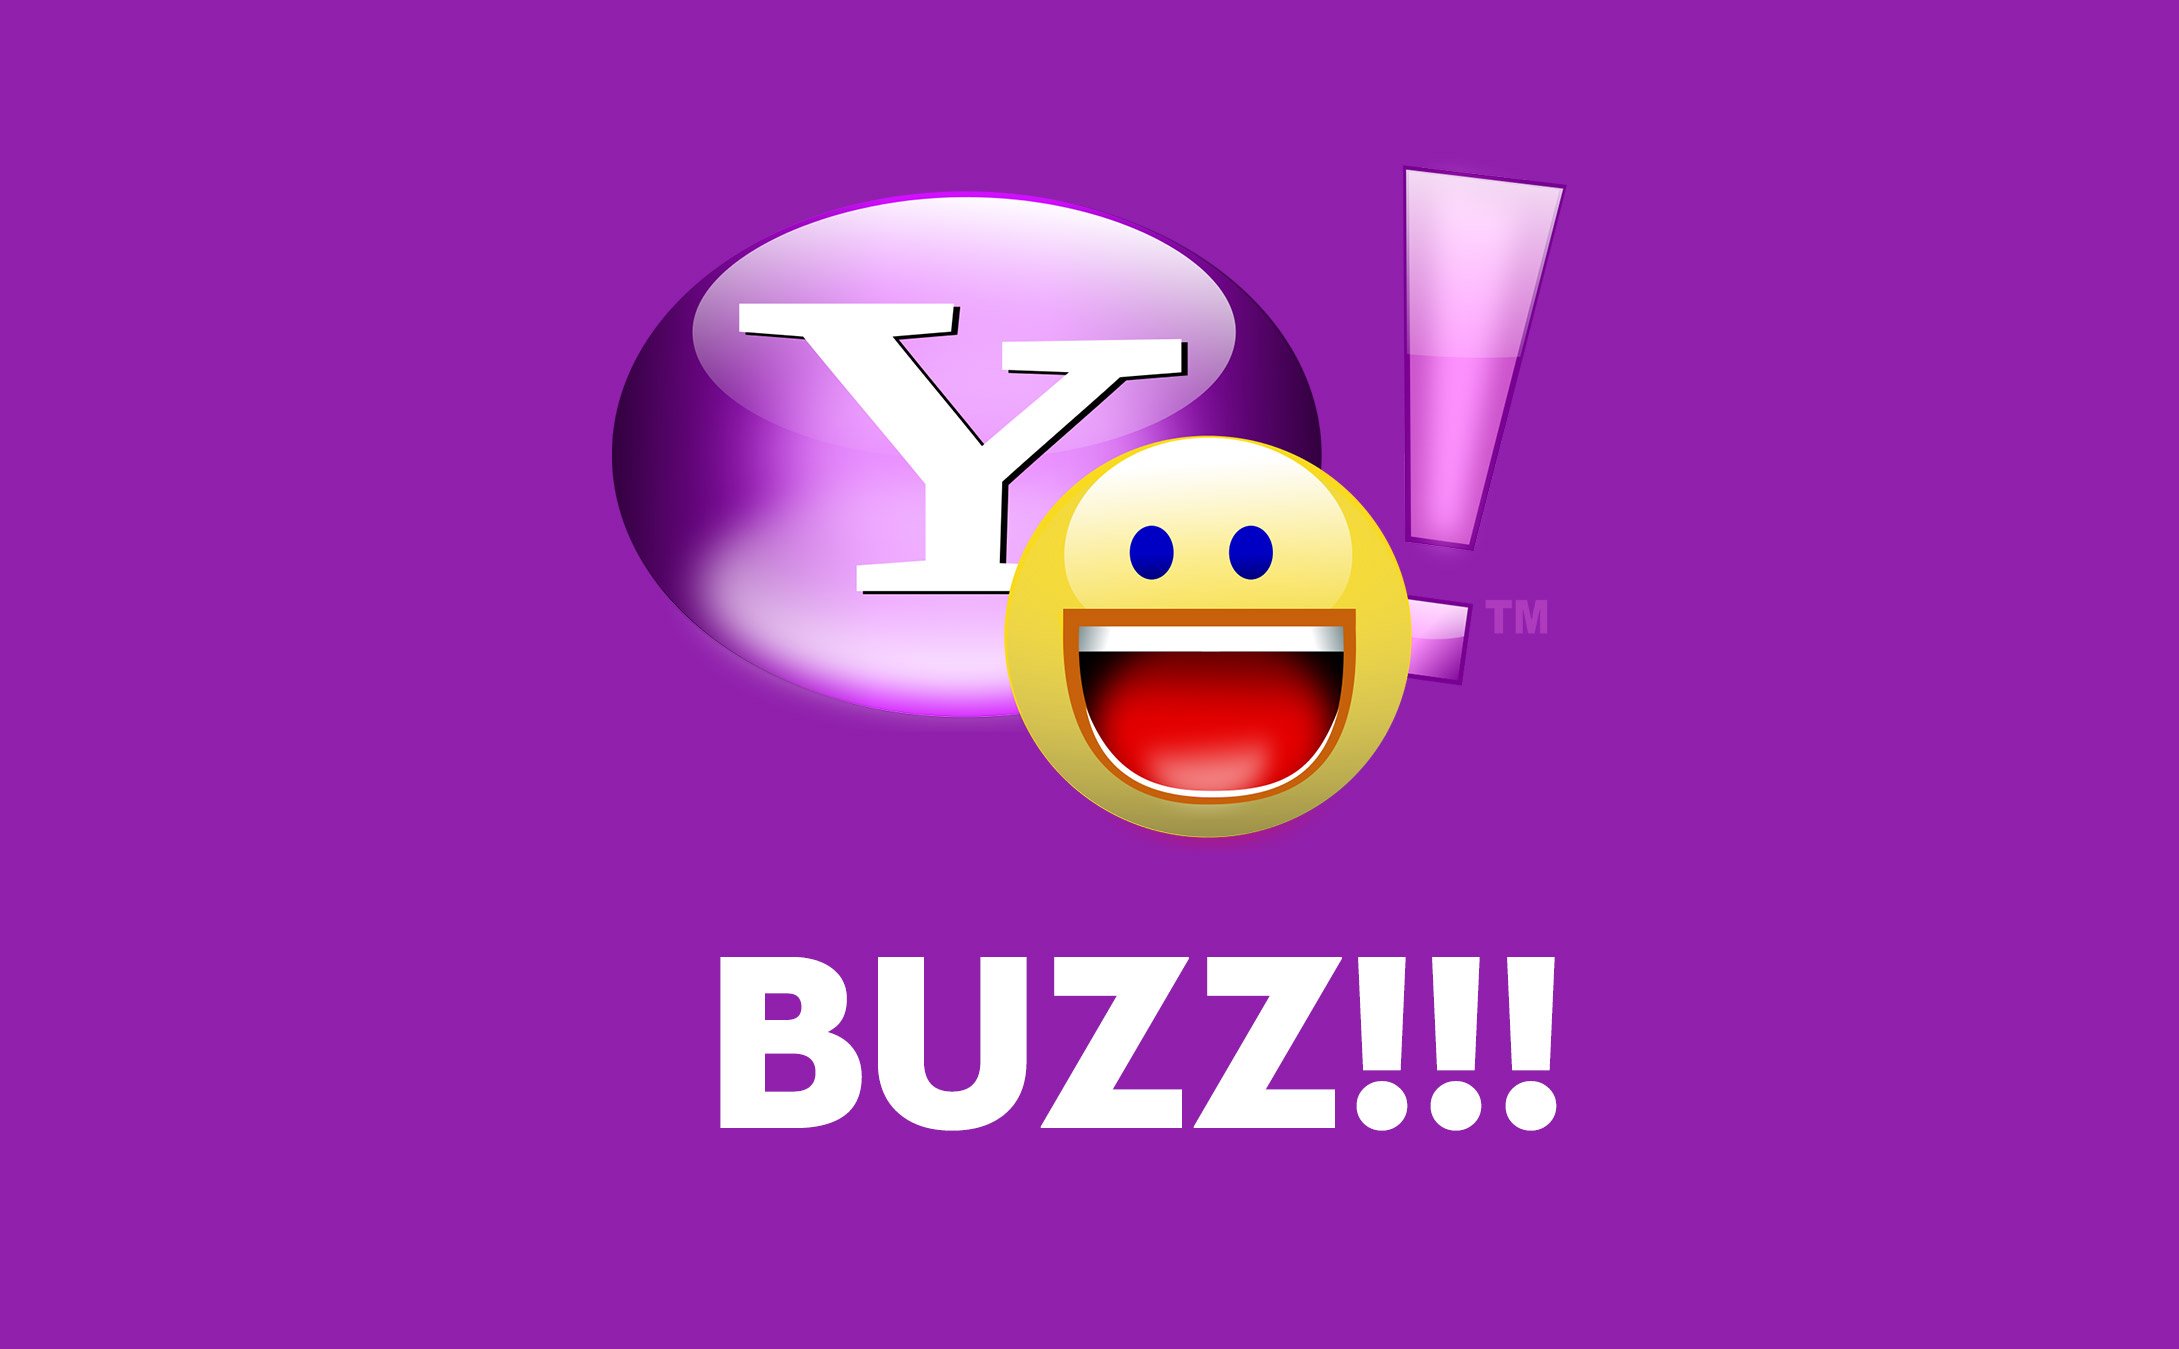 Hôm nay Yahoo Messenger chính thức đóng cửa, mời anh em chia sẻ kỉ niệm về YM!